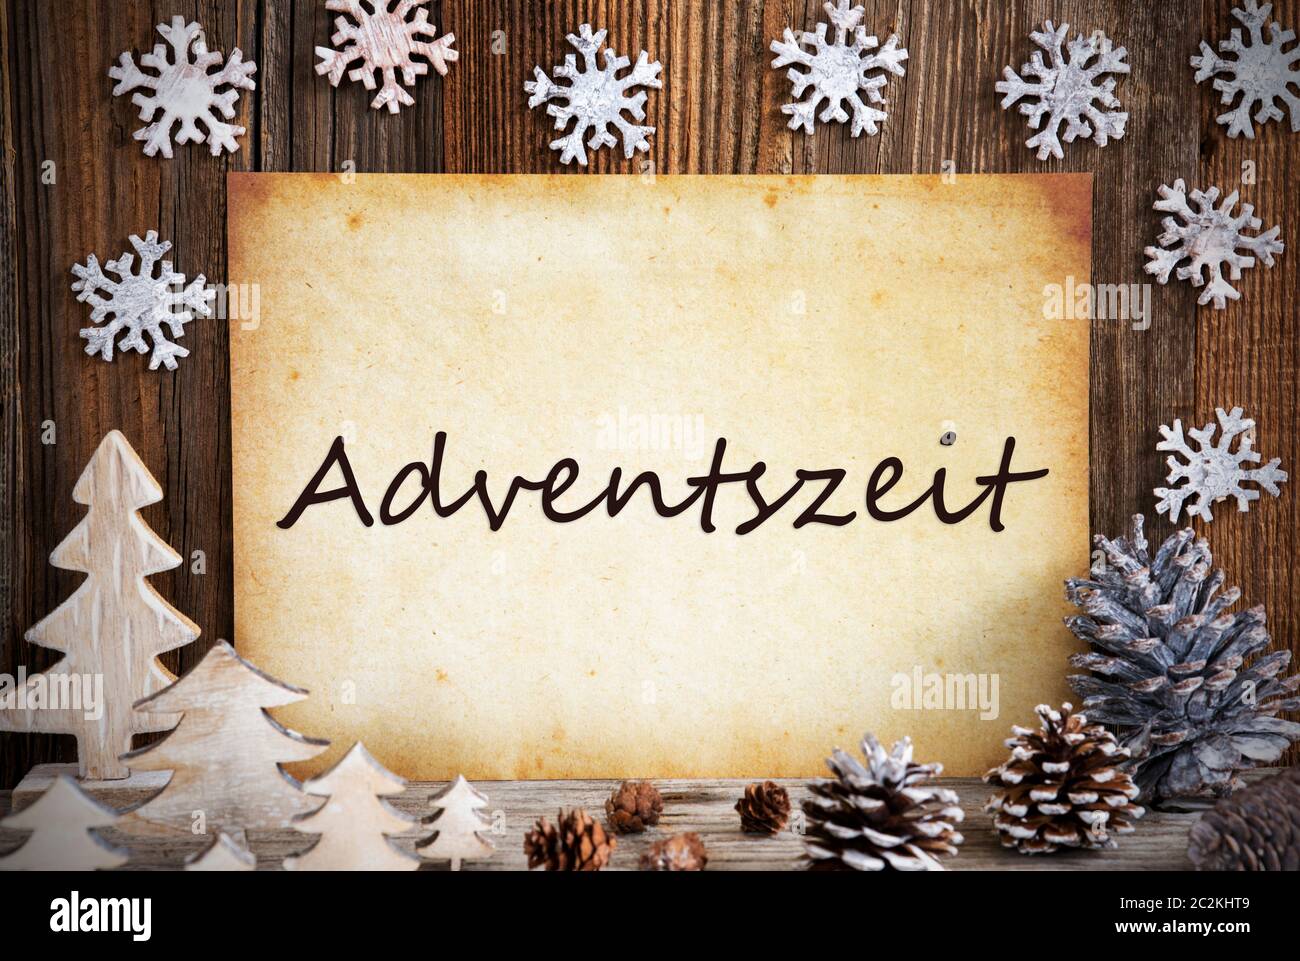 Altes Papier mit deutschem Text bedeutet Adventszeit Adventszeit. Weihnachtsdekoration wie Baum, Tannenzapfen und Schneeflocken. Braun Holz- Hintergrund Stockfoto